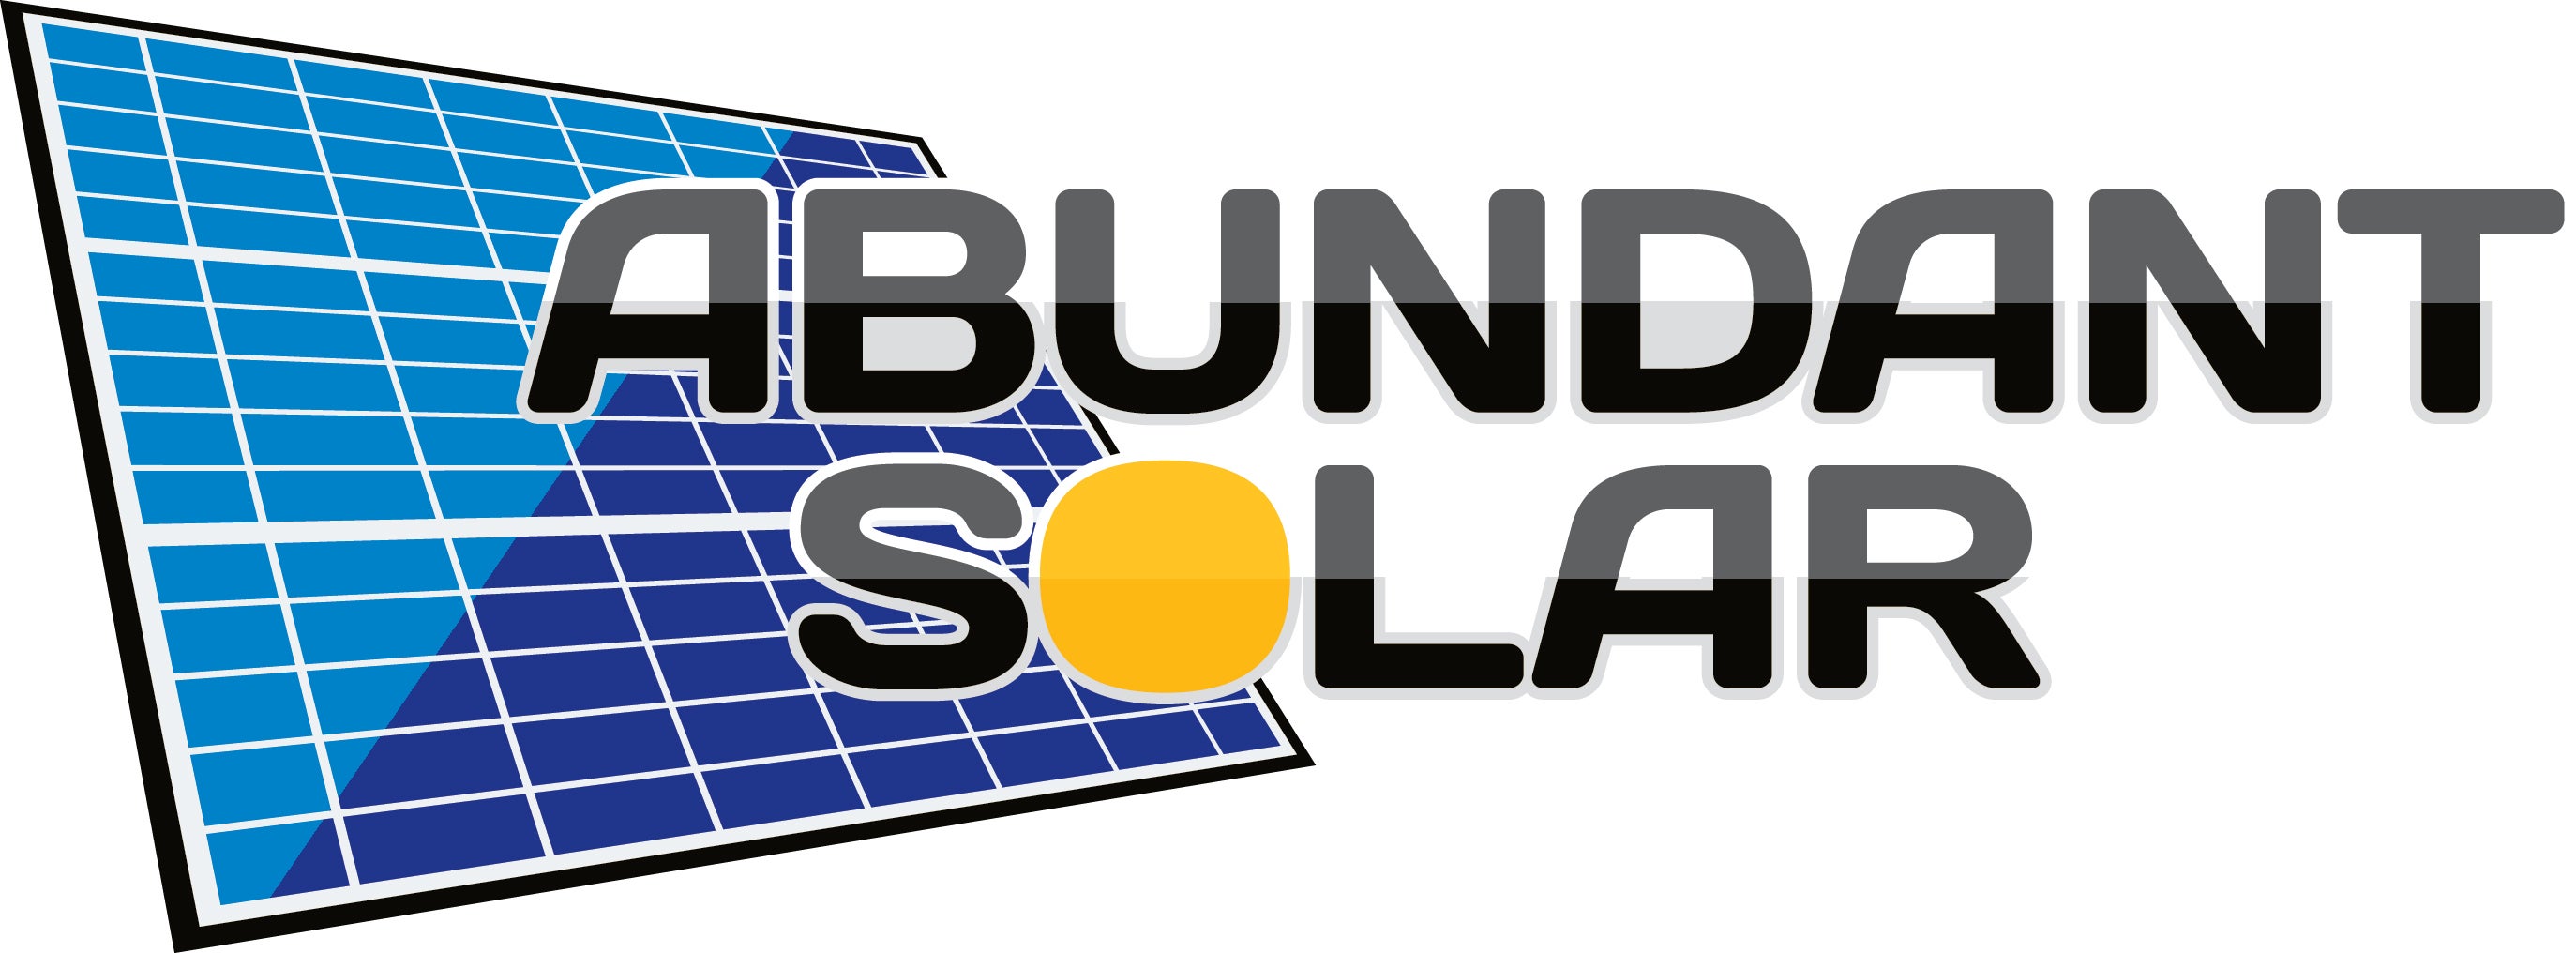 Abundant Solar LLC